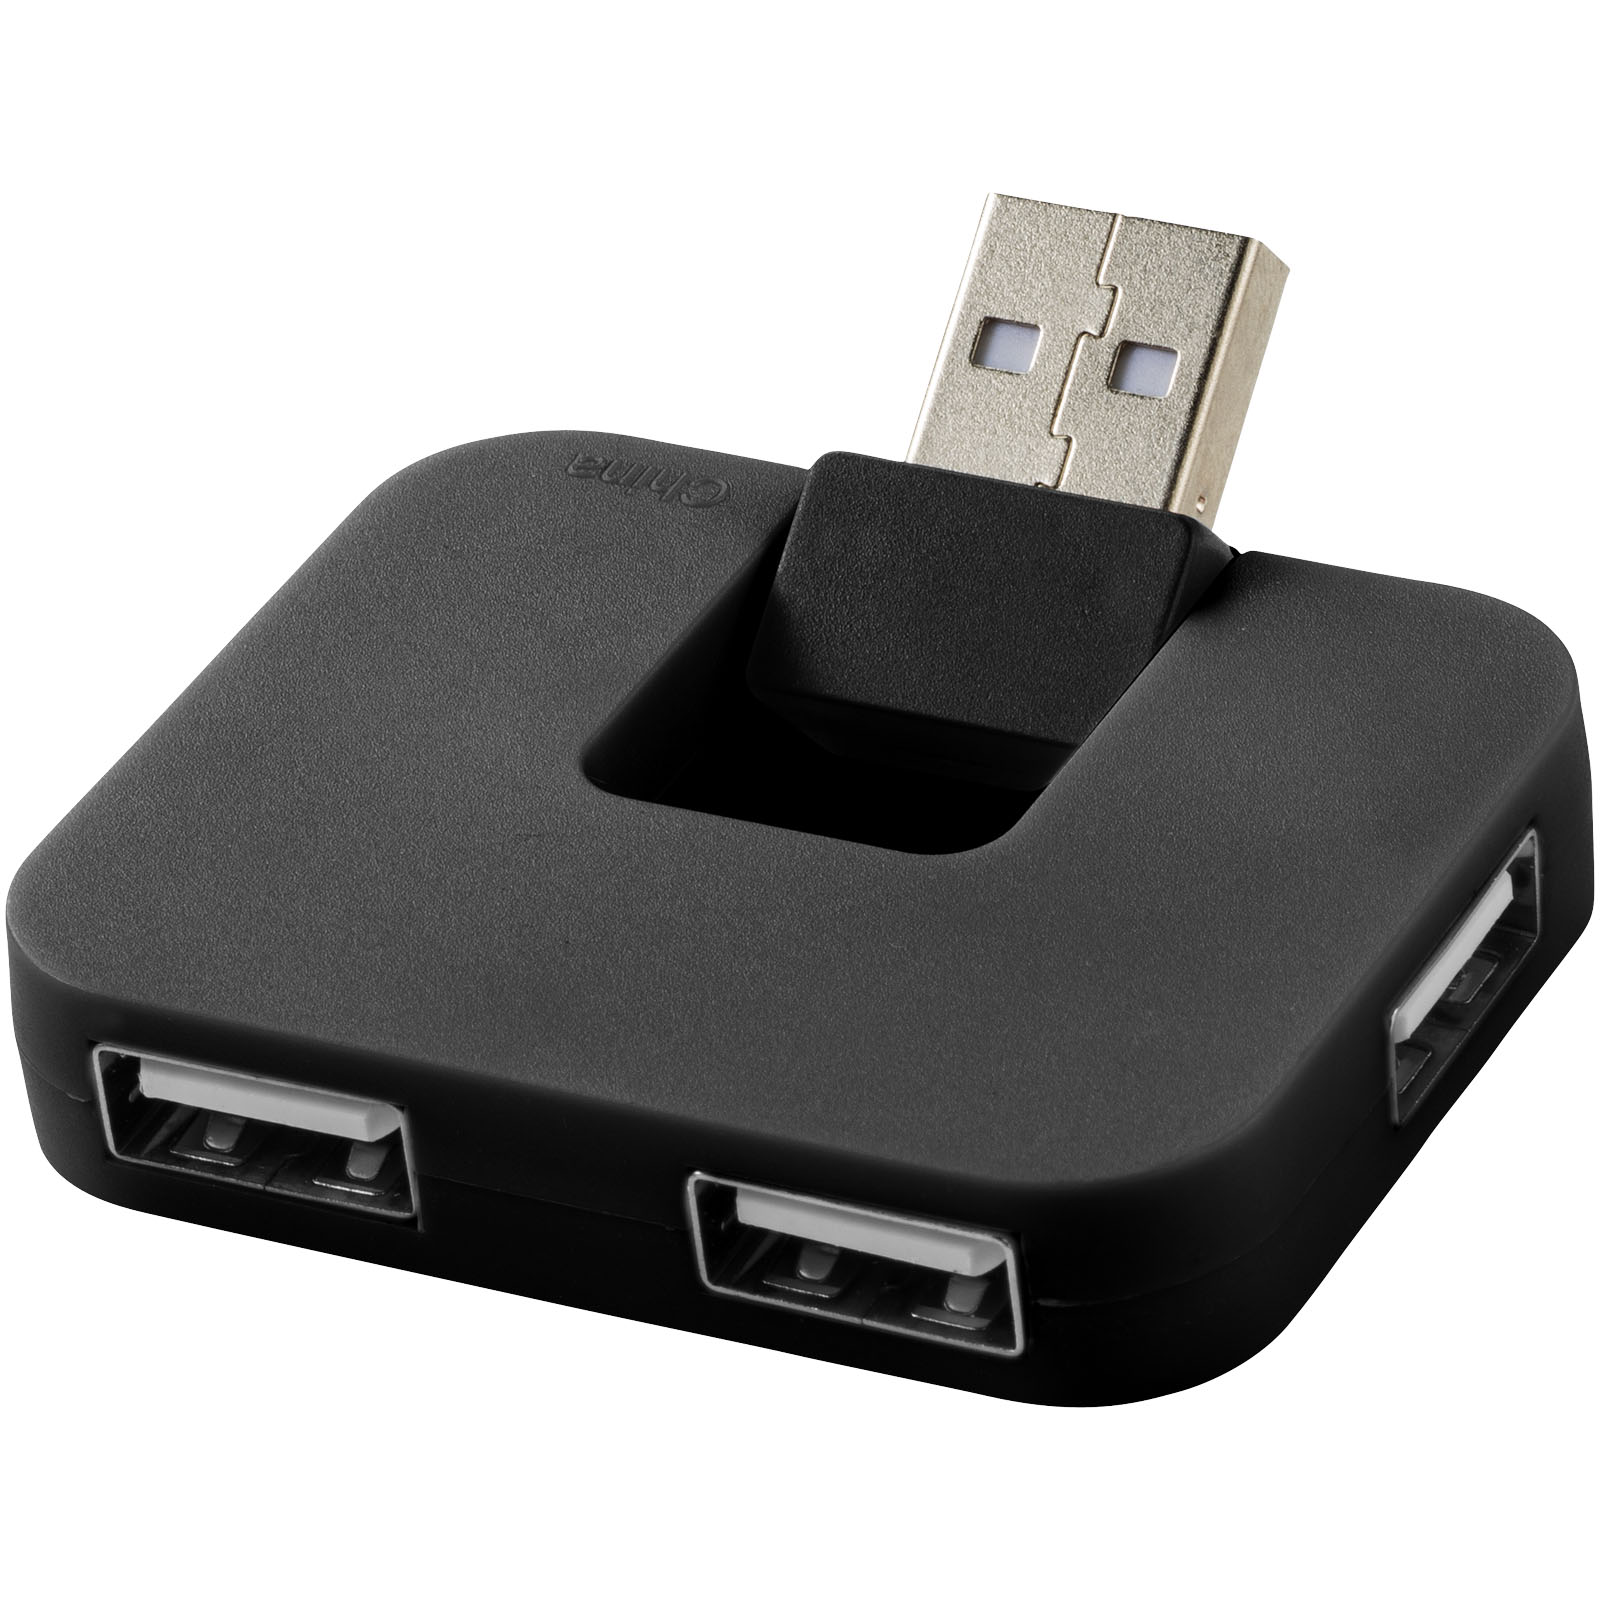 Hubs USB - Hub USB 4 ports Gaia